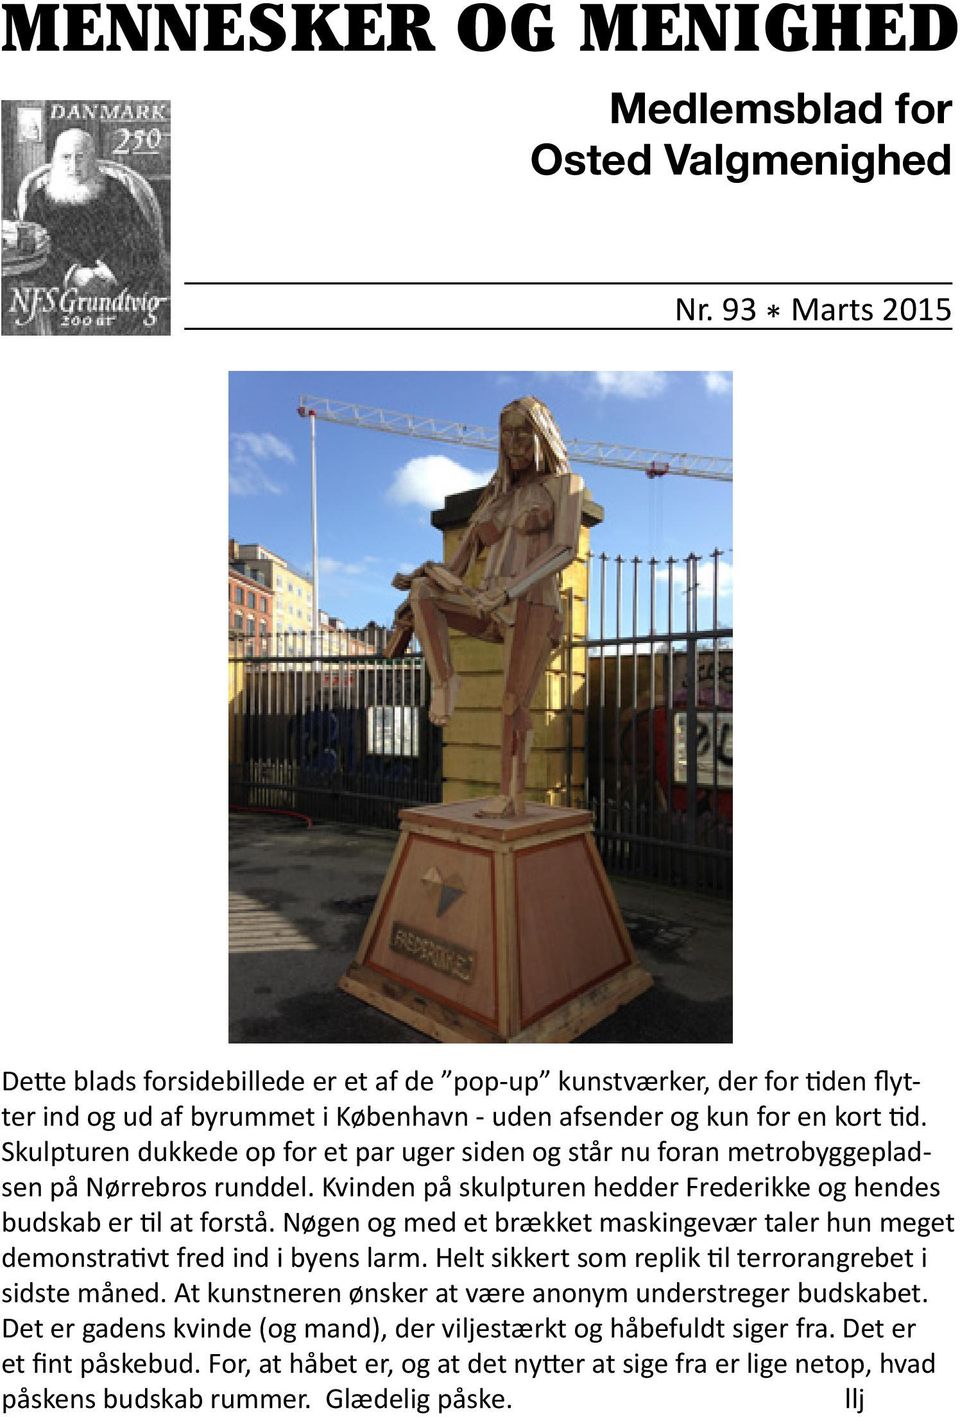 Skulpturen dukkede op for et par uger siden og står nu foran metrobyggepladsen på Nørrebros runddel. Kvinden på skulpturen hedder Frederikke og hendes budskab er til at forstå.